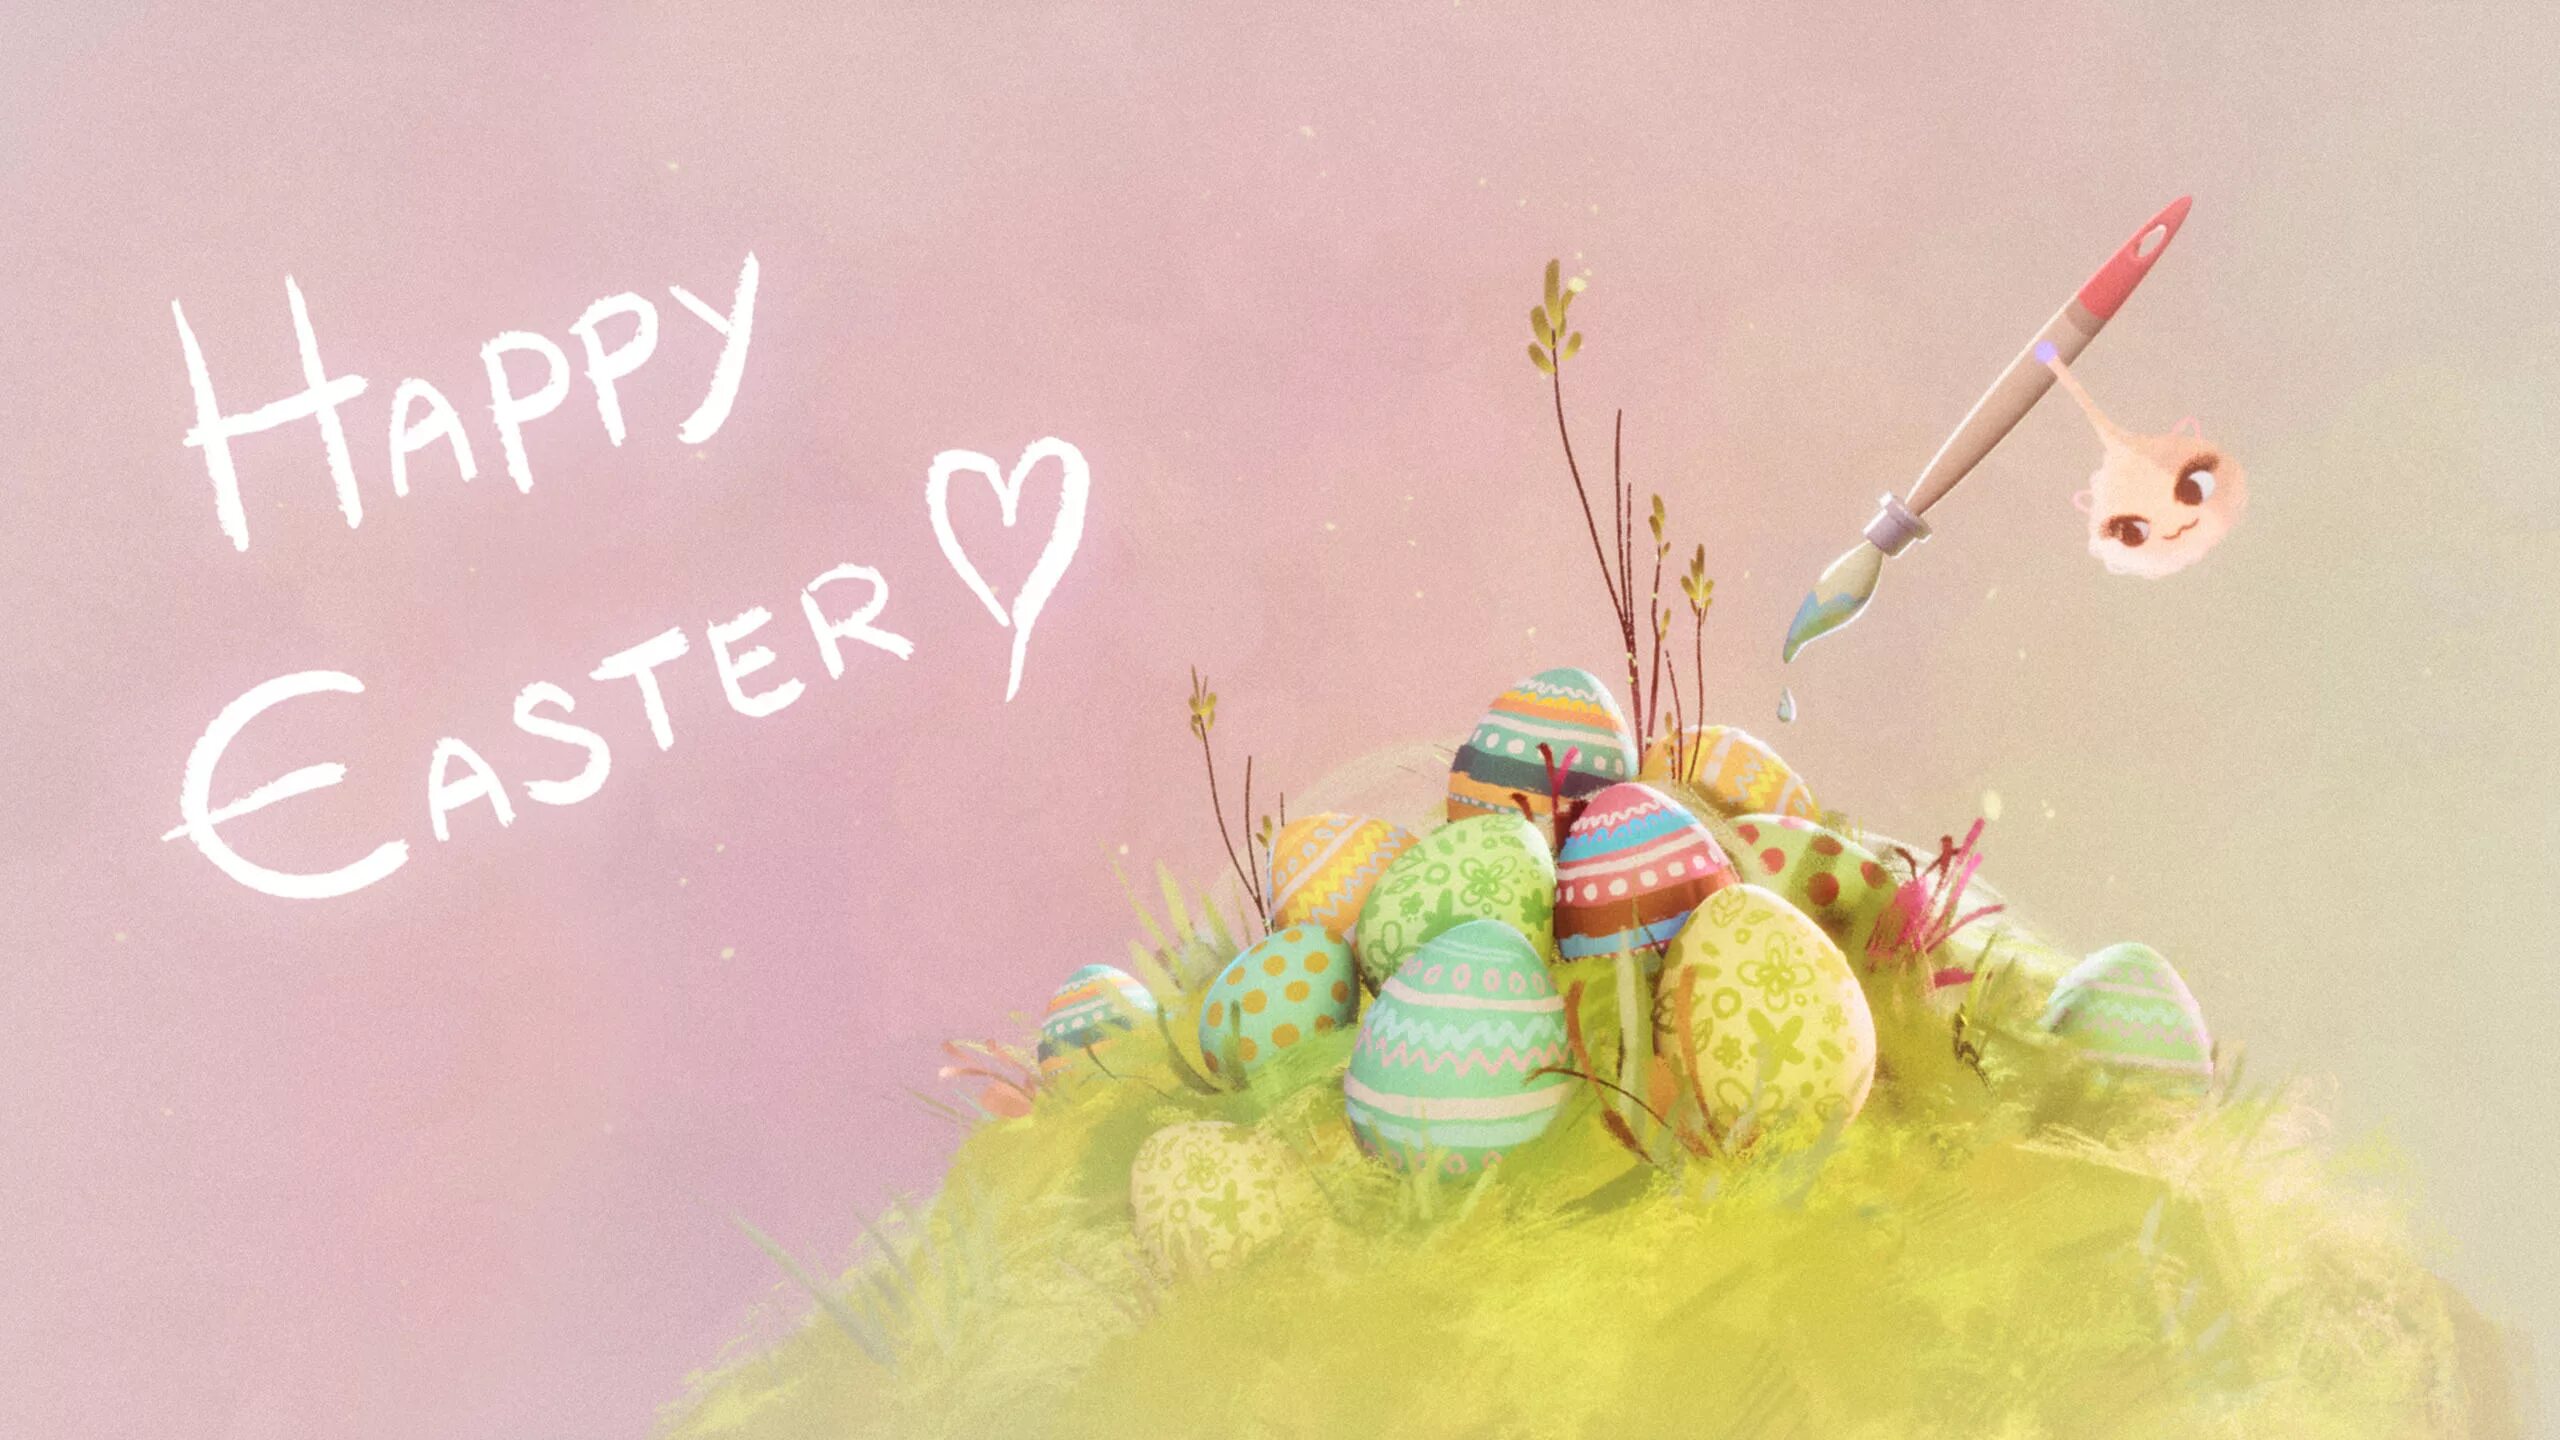 Пасха. Картинки на рабочий стол Пасха. Happy Easter!. Пасха открытка Минимализм. С пасхой на английском открытки